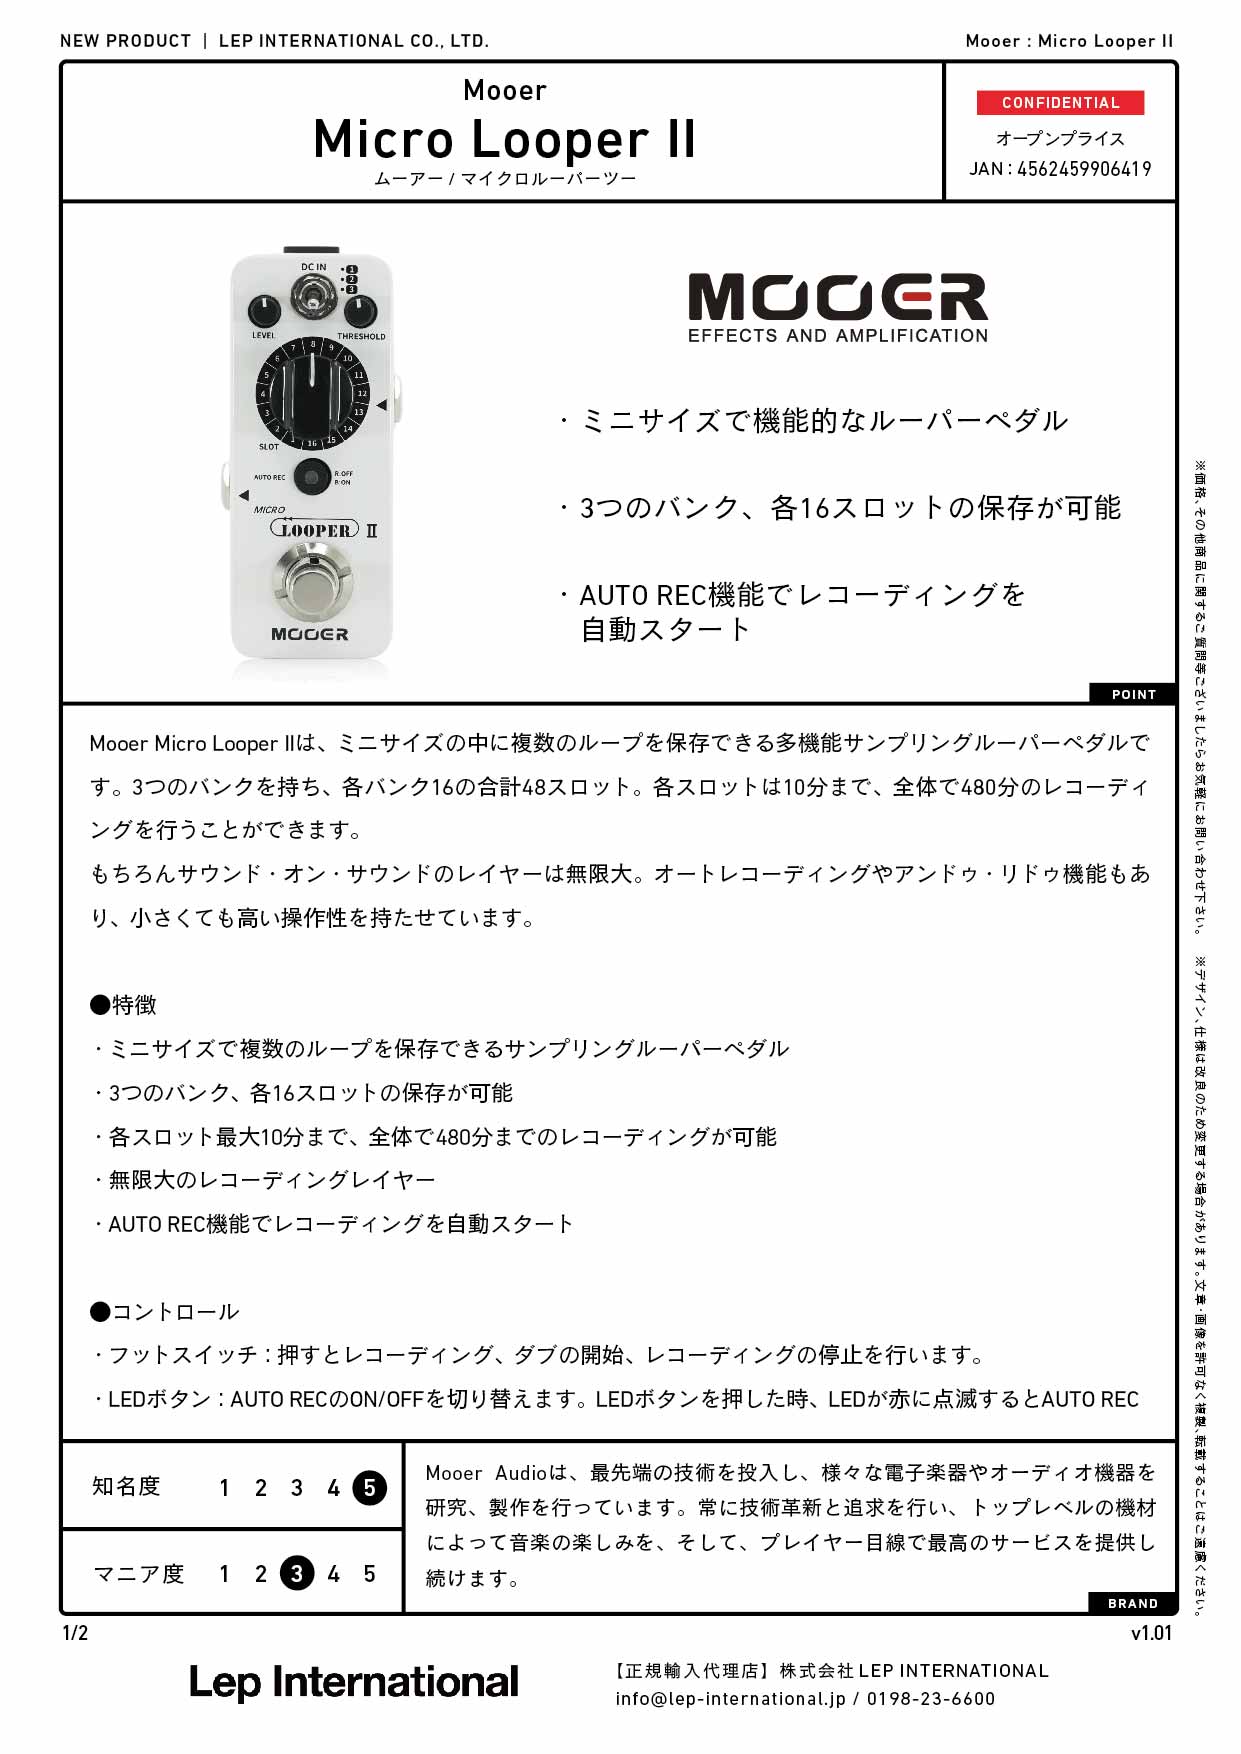 Mooer / Micro Looper II